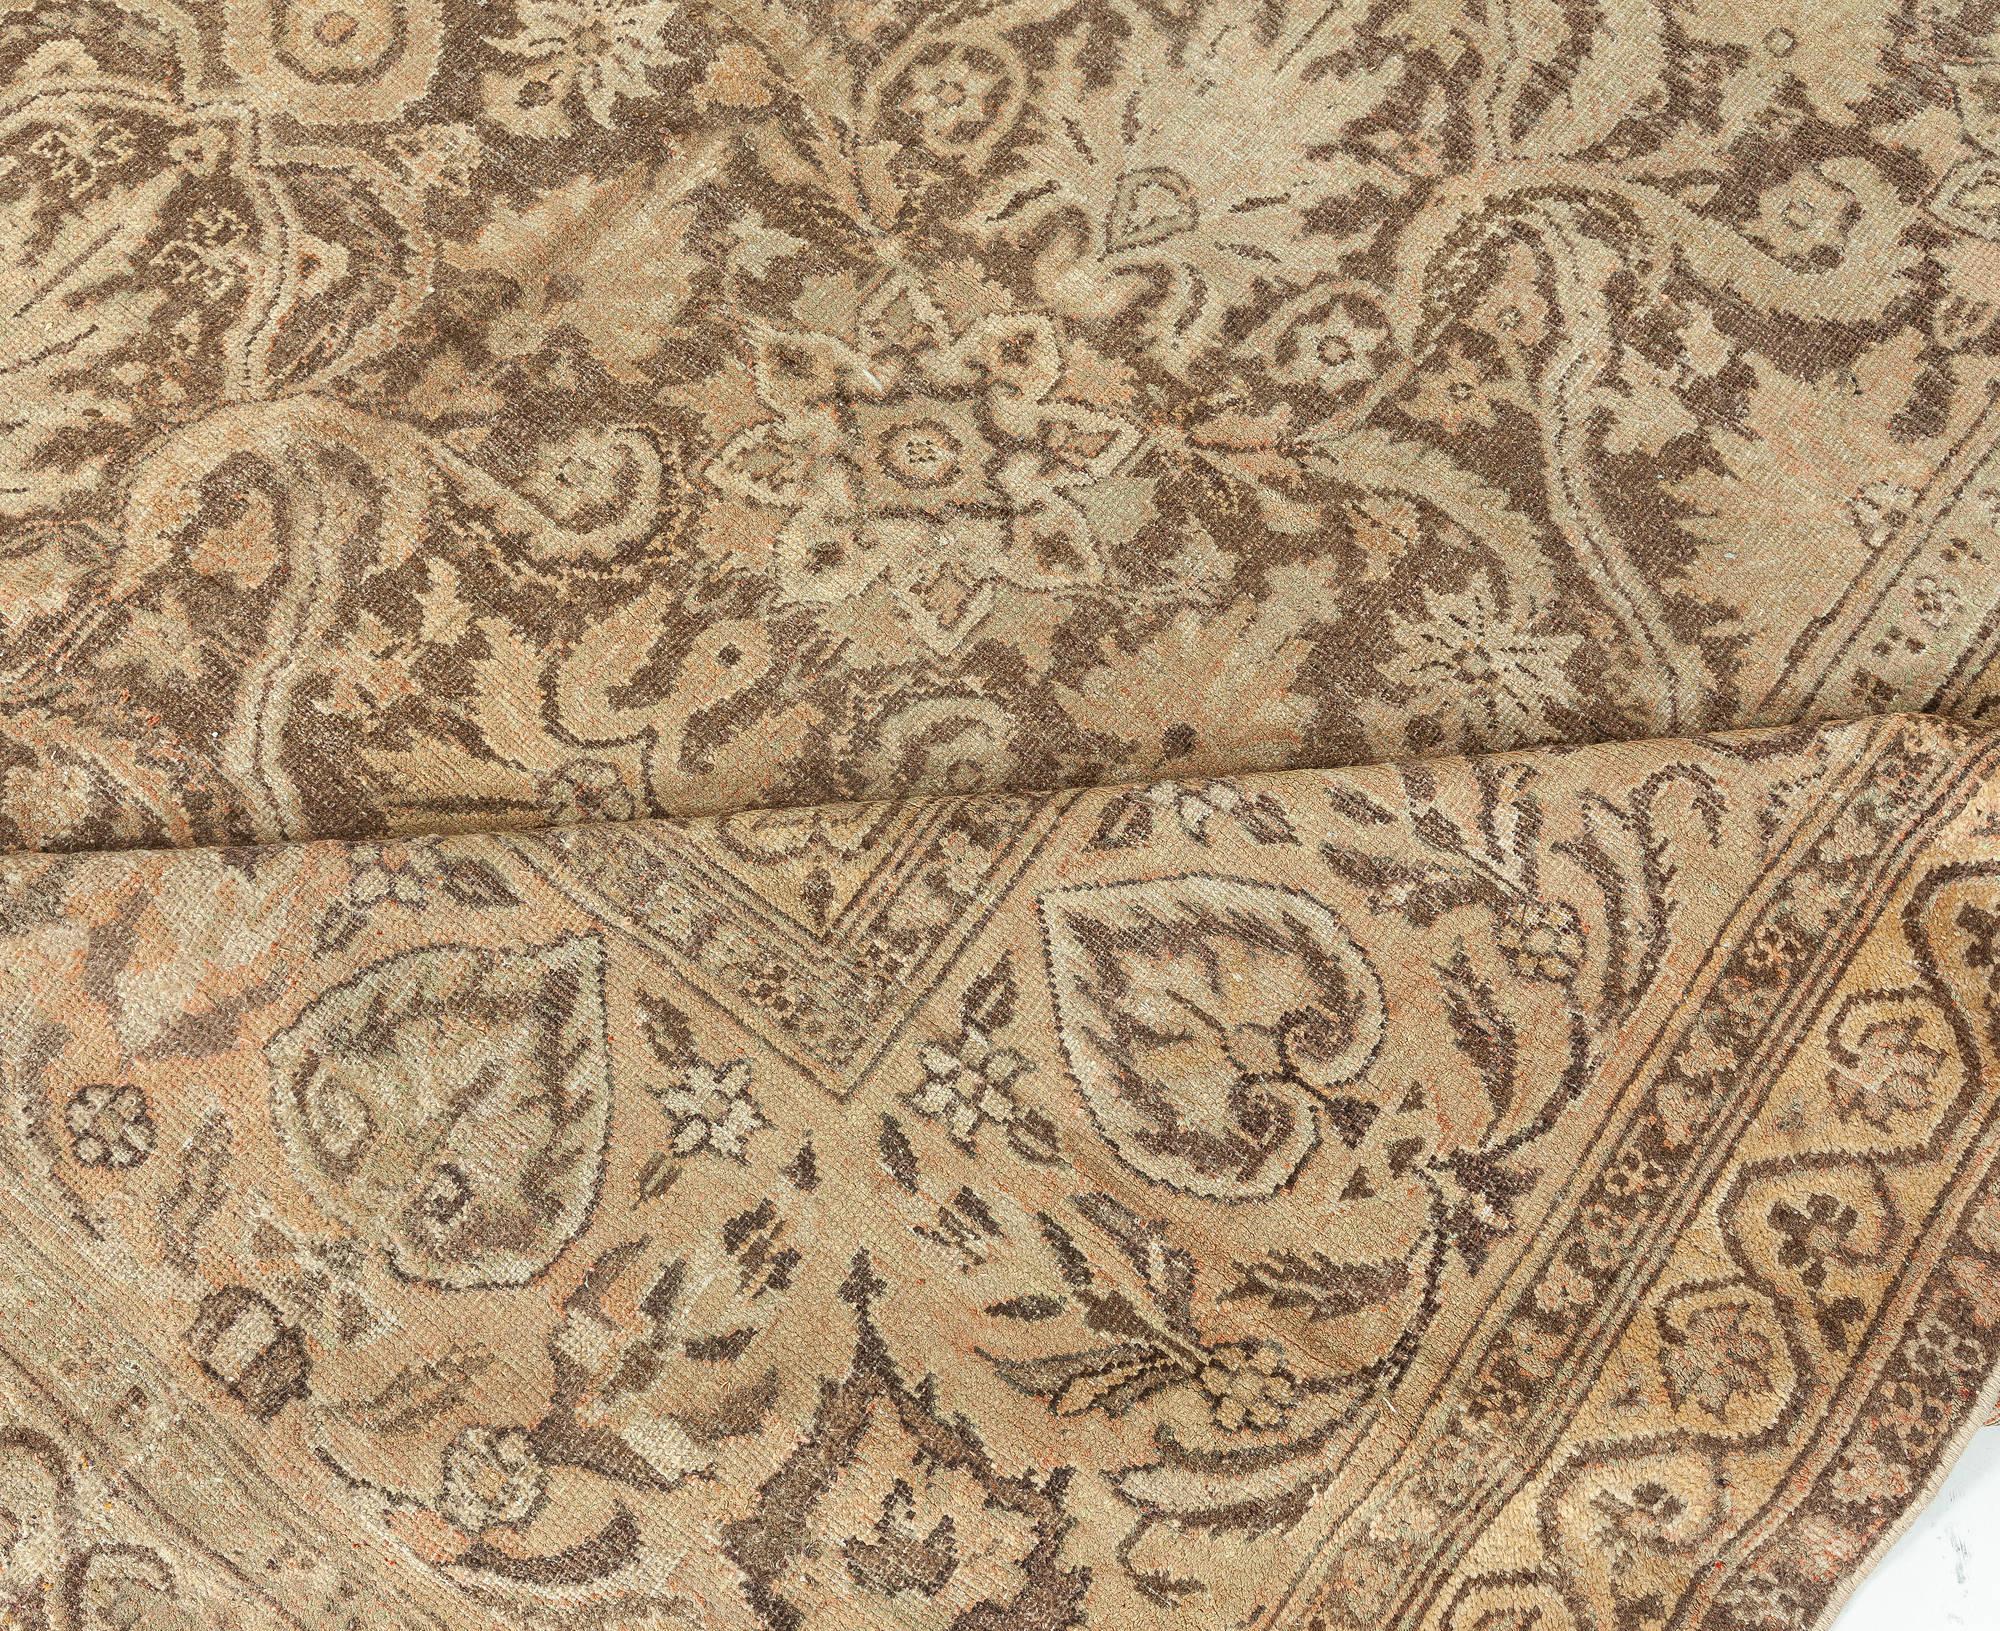 Vintage Indian Amritsar handmade wool carpet
Size: 12'6